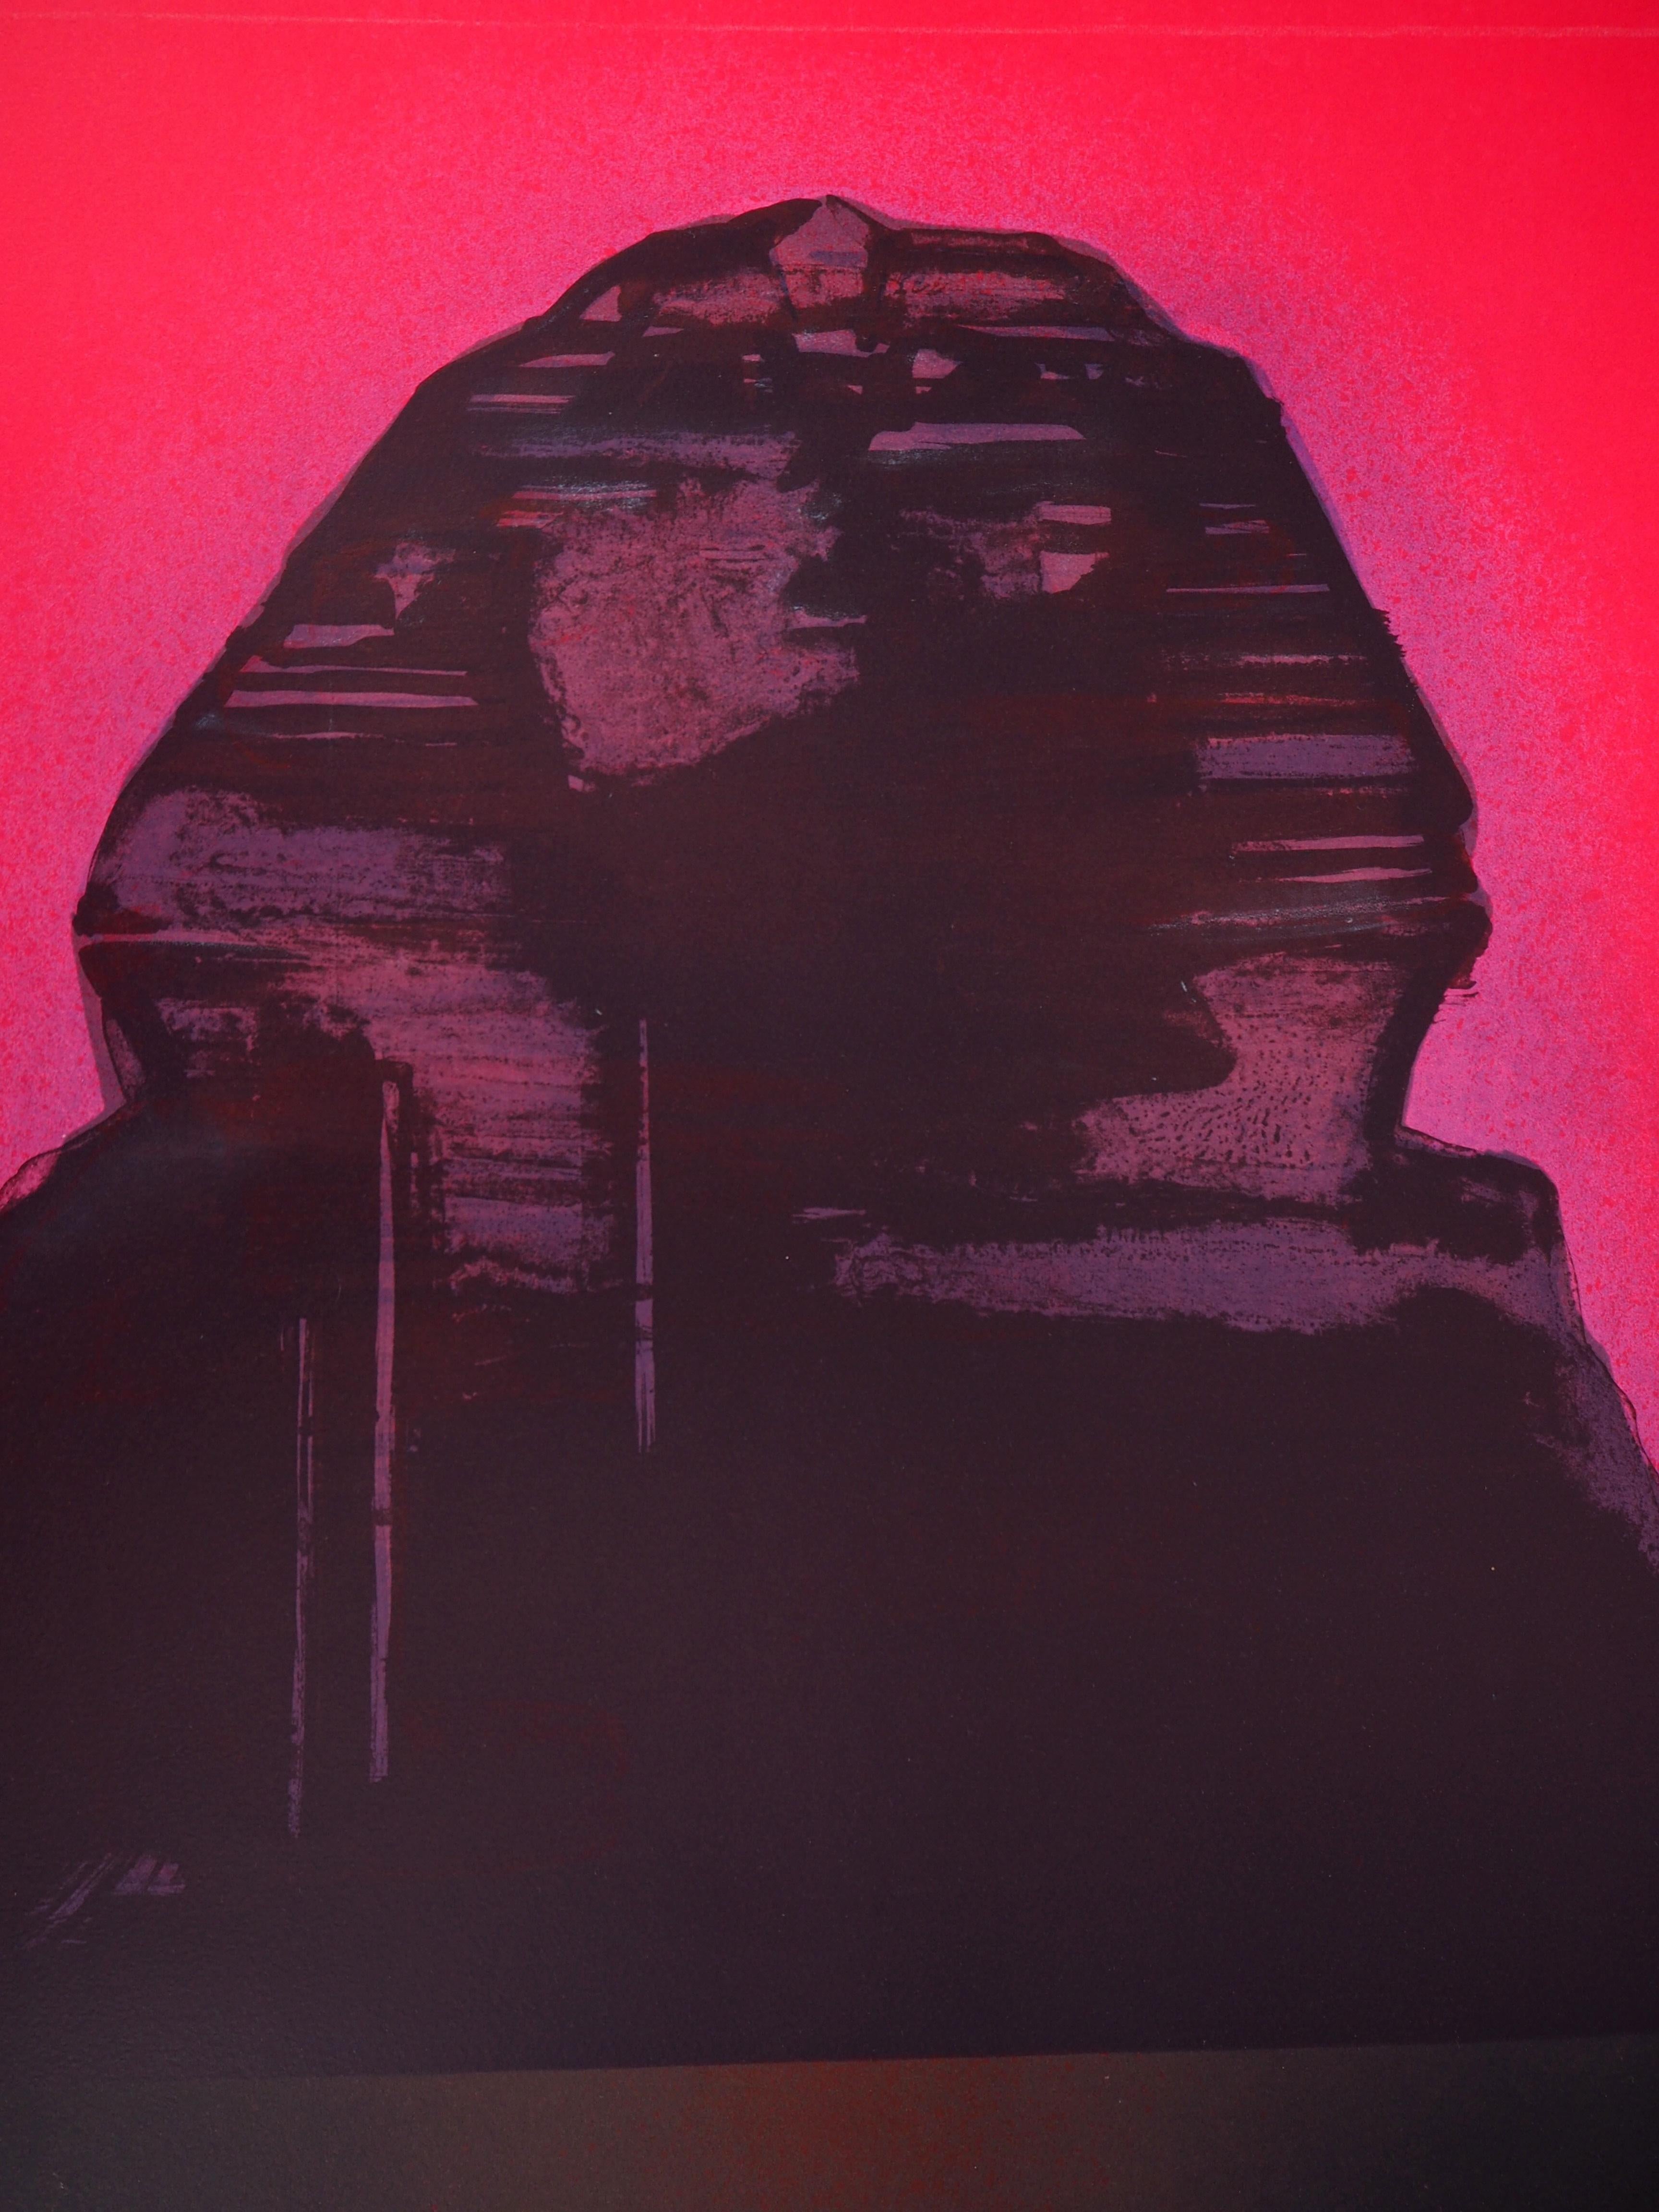 Claude HASTAIRE
Égypte : Le Sphinx

Lithographie originale
Signé à la main au crayon
Numéroté /90 
Sur vélin 76 x 56 cm (c. 29.9 x 22 inches)

Excellent état